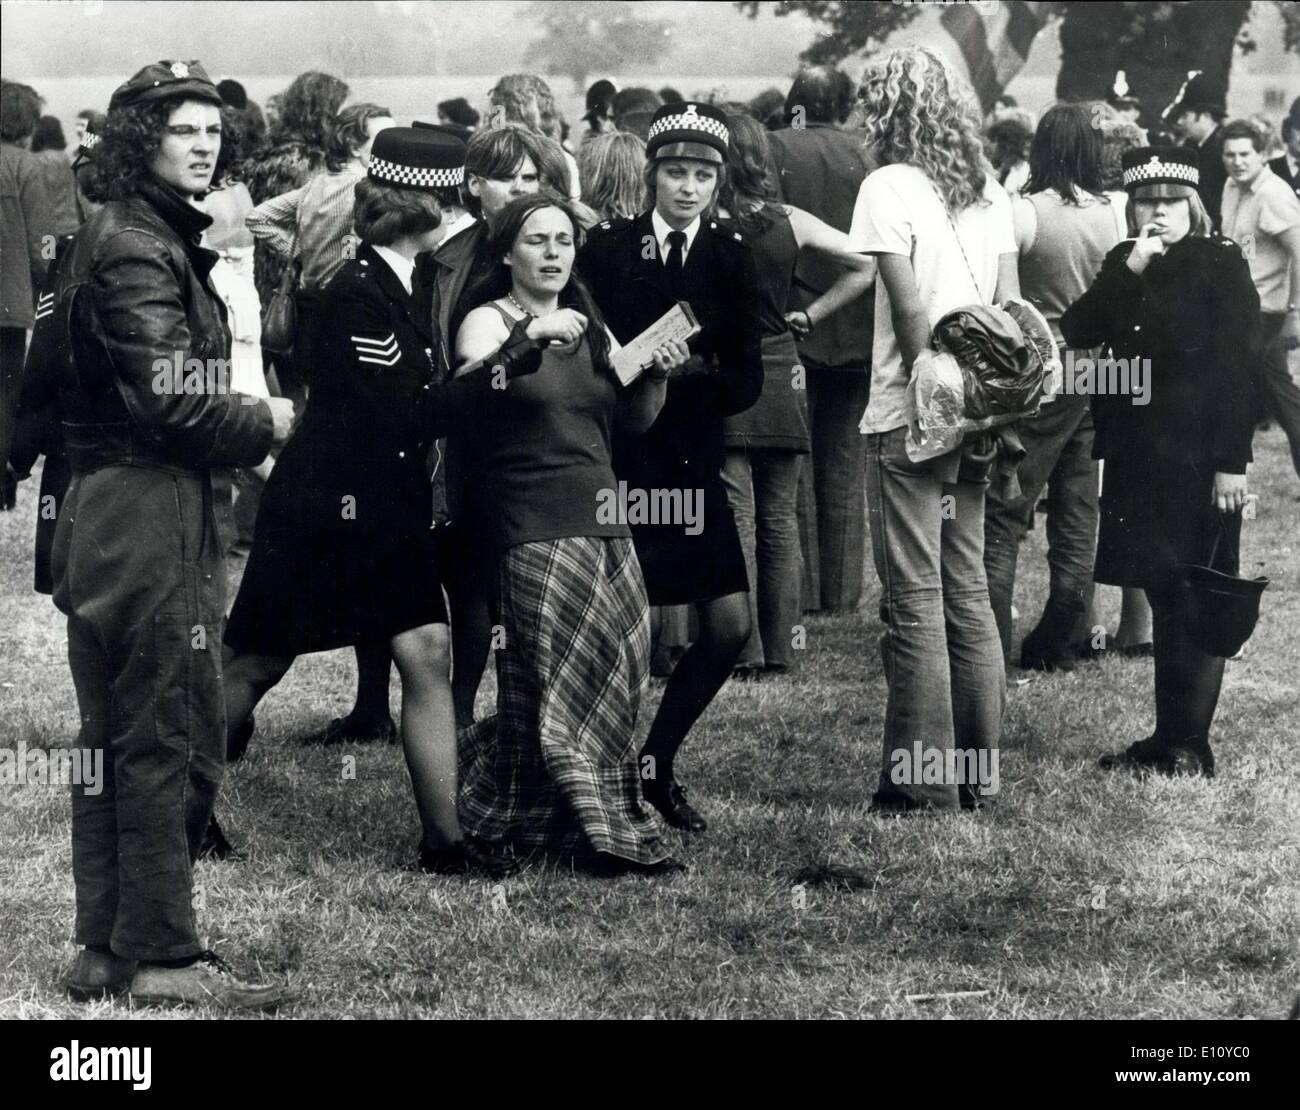 Il 30 agosto 1974 - 600 polizia si scontrano con i fan del genere pop in un ''Cancellare'' Raid al Windsor Great Park: più di 600 swooped di polizia su 2.000 hippies presso il Windsor Great Park festival pop e ordinò loro di ''pack fino alle loro tende e andare". Alcuni obbedito alla fine, ma molti di loro hanno resistito. Una scena di isteria scoppiata a seguito di uno scontro tra la polizia e i tifosi pop. Molte persone sono state ferite, tra cui poliziotti e molti arresti sono stati eseguiti. La foto mostra una ragazza pop ventola è portato via da poliziotta in Windsor Great Park di ieri. Foto Stock